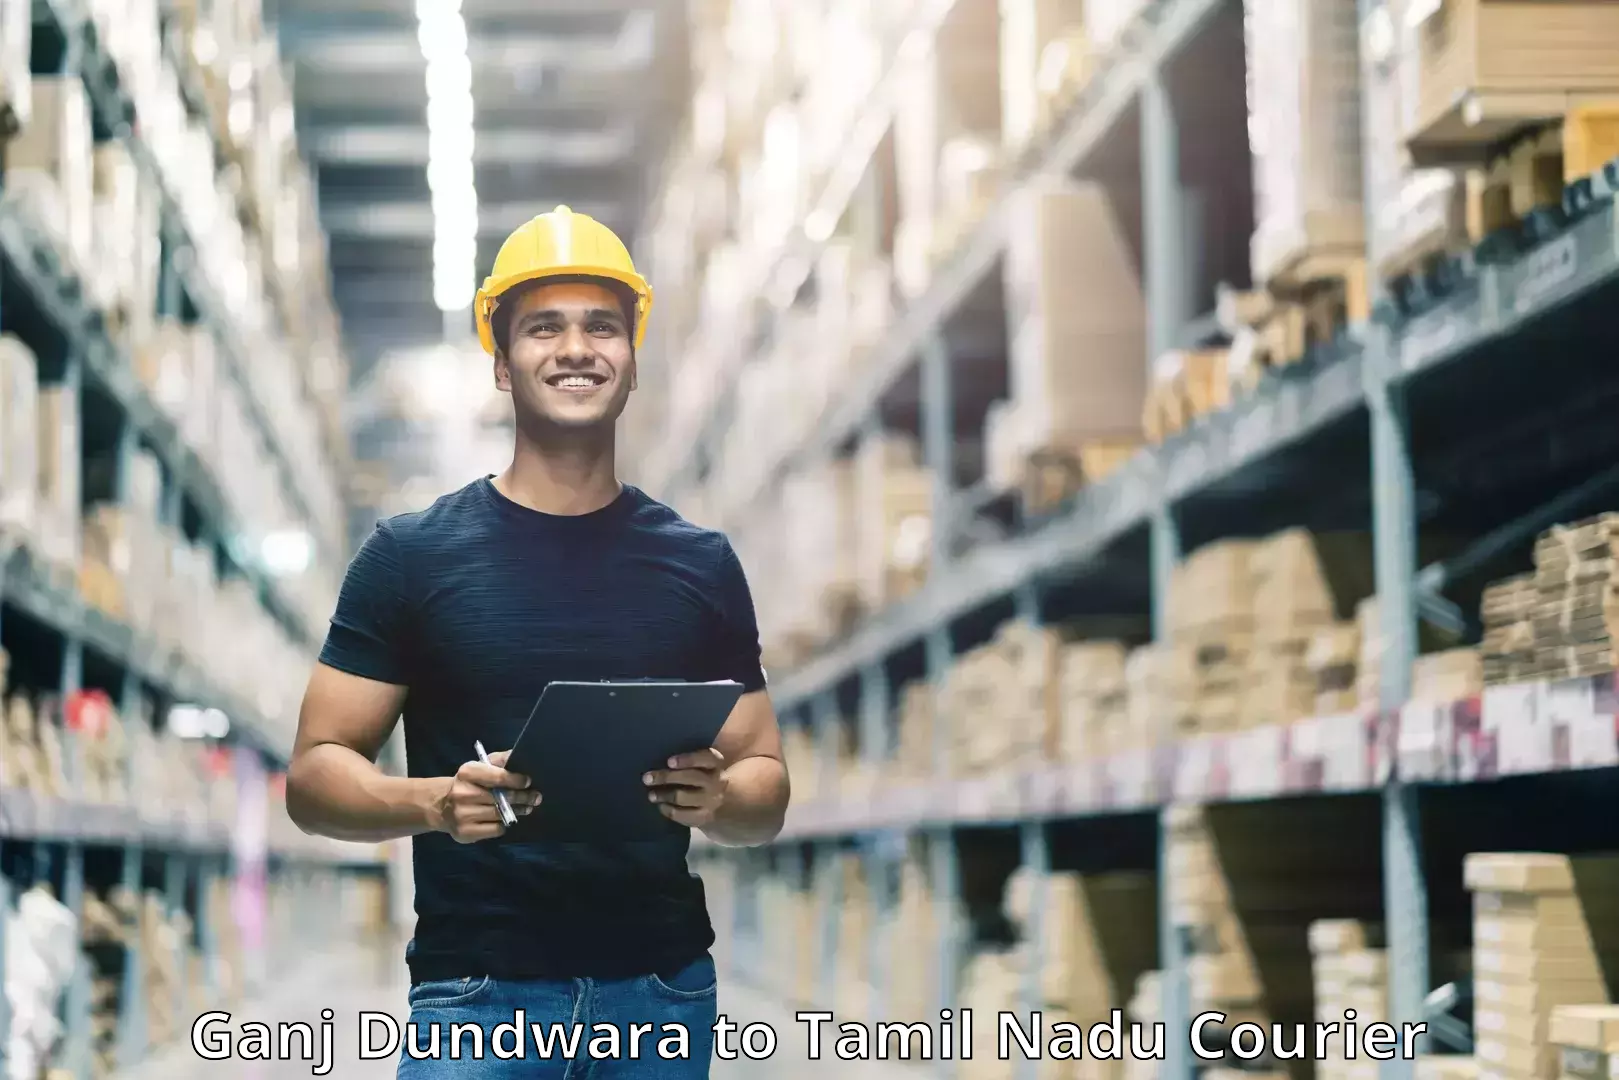 Parcel service for businesses Ganj Dundwara to Tamil Nadu